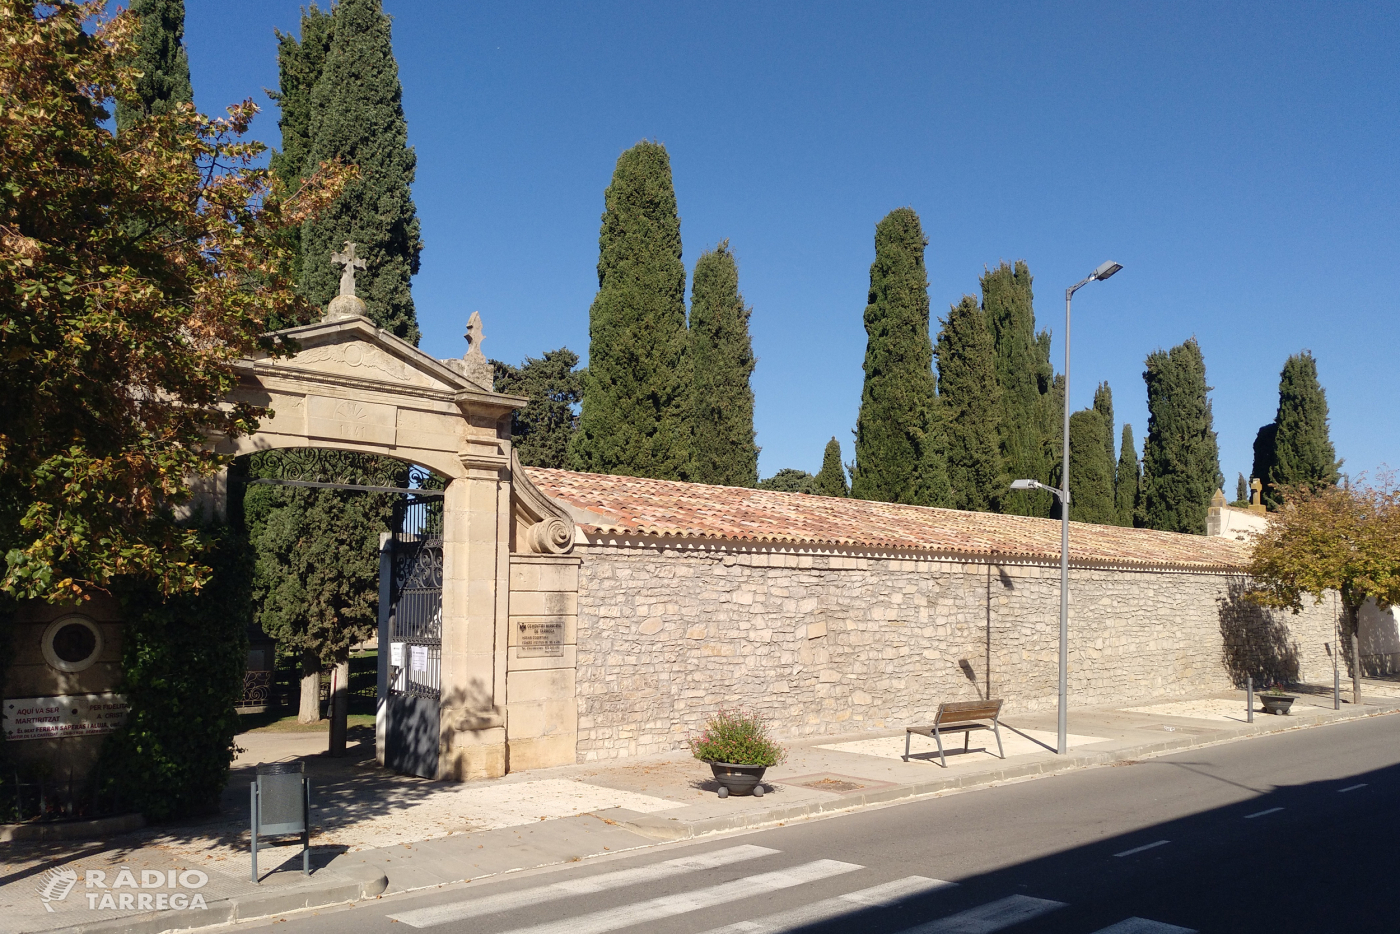 L'Ajuntament de Tàrrega iniciarà la segona fase de rehabilitació de cobertes al cementiri municipal abans de finalitzar l’any